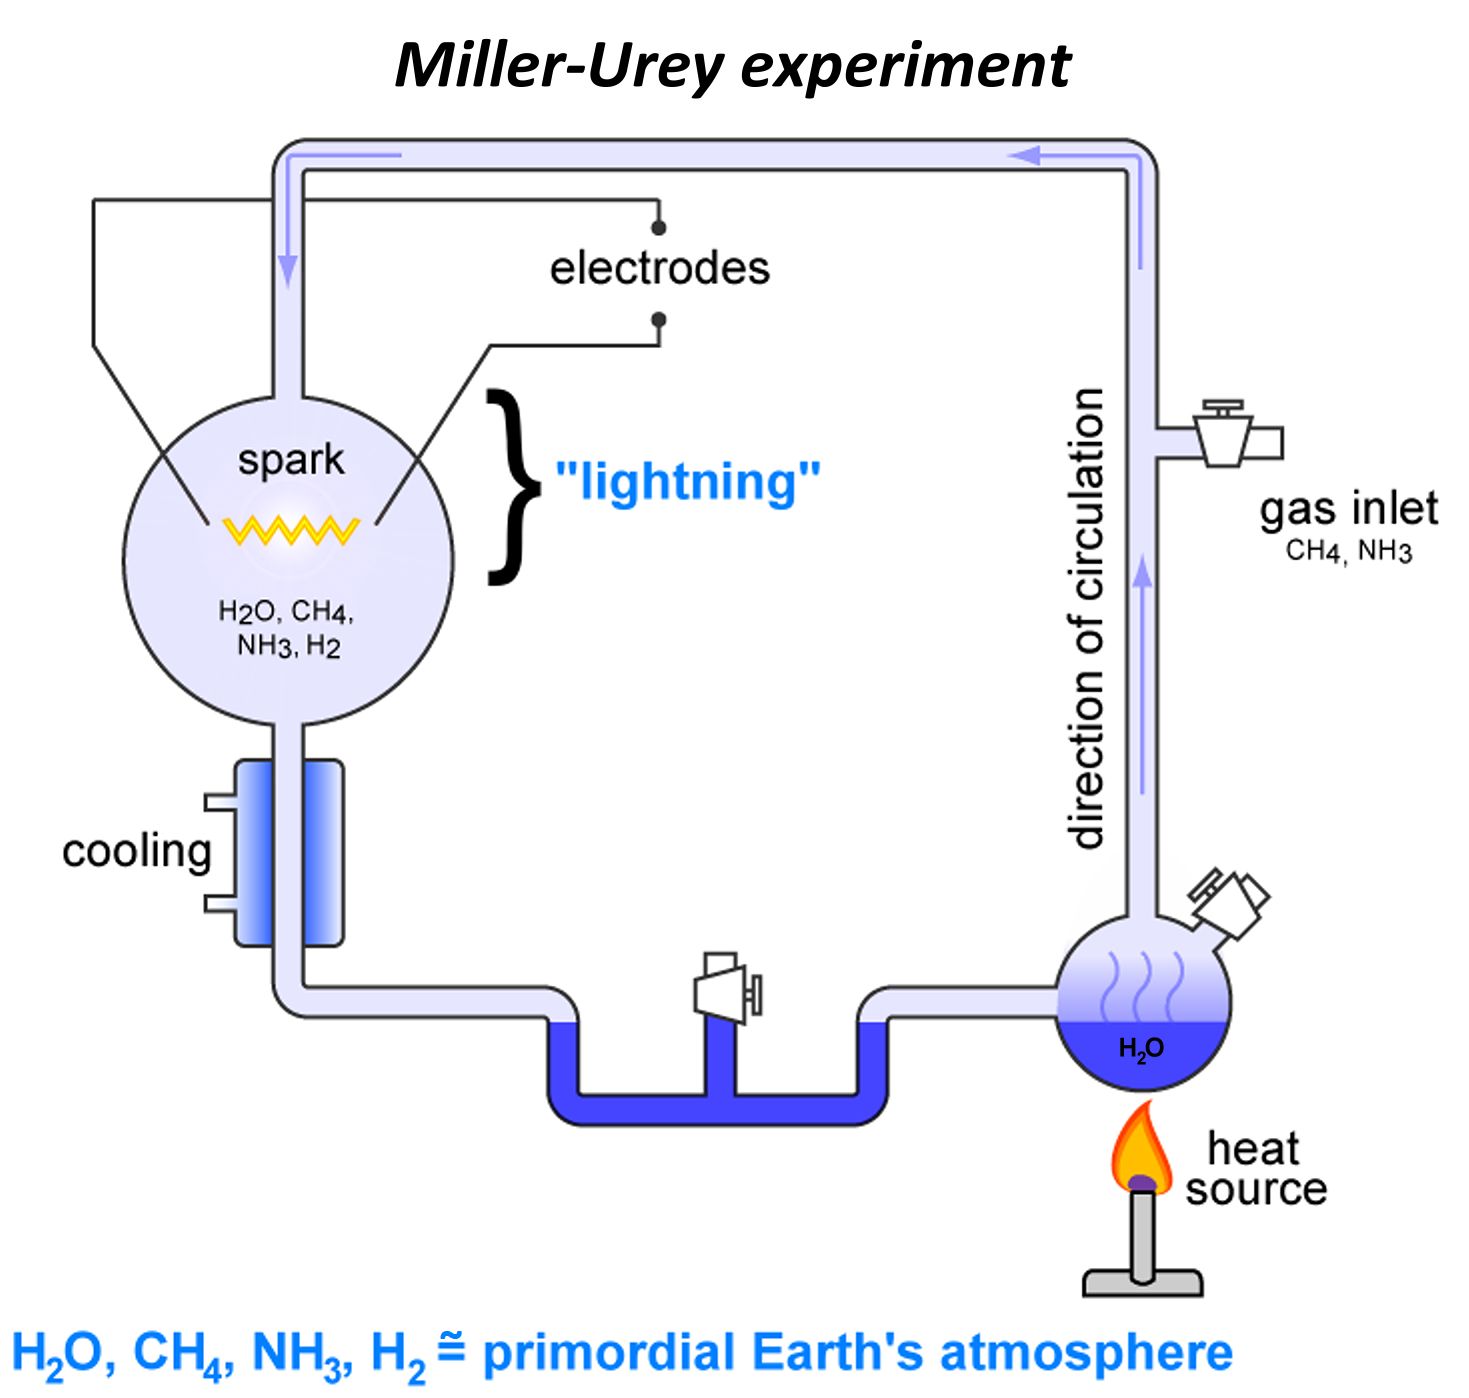 Опыты миллера доказали. Эксперимент Миллера - Юри. Эксперимент Миллера Юри и теория Опарина Холдейна. Опыт Миллера. Опыт имитирующий условия первичной атмосферы земли.